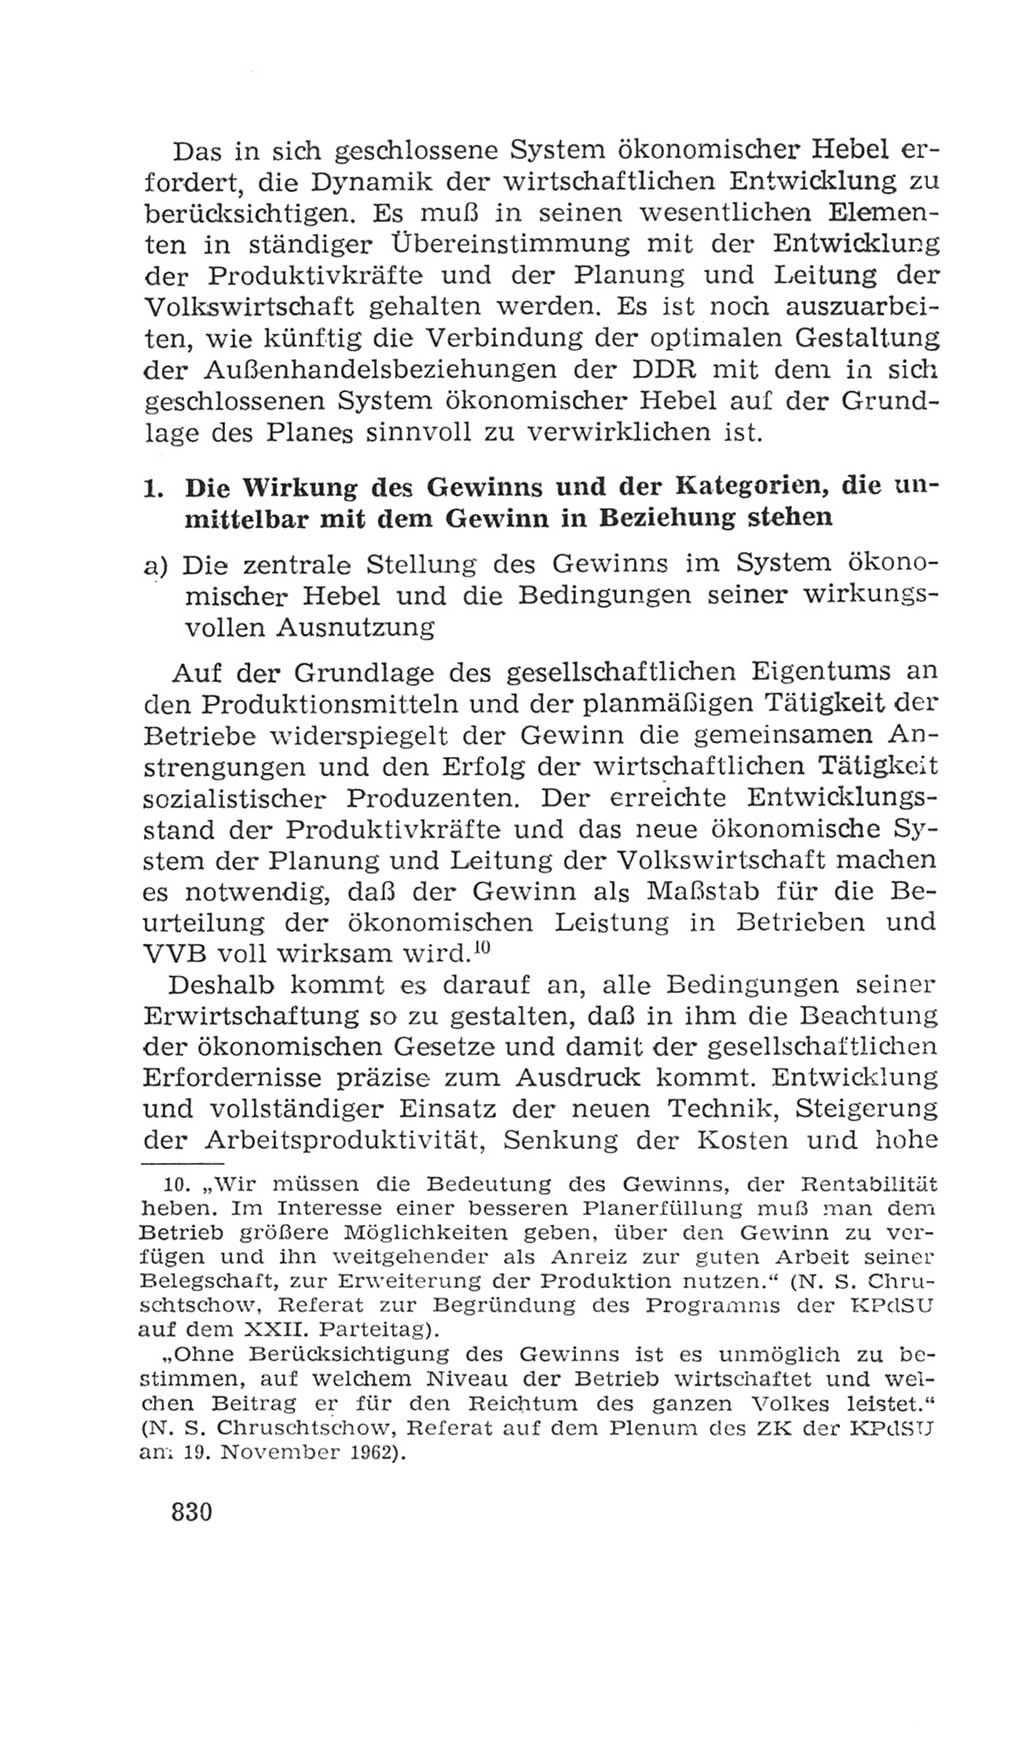 Volkskammer (VK) der Deutschen Demokratischen Republik (DDR), 4. Wahlperiode 1963-1967, Seite 830 (VK. DDR 4. WP. 1963-1967, S. 830)